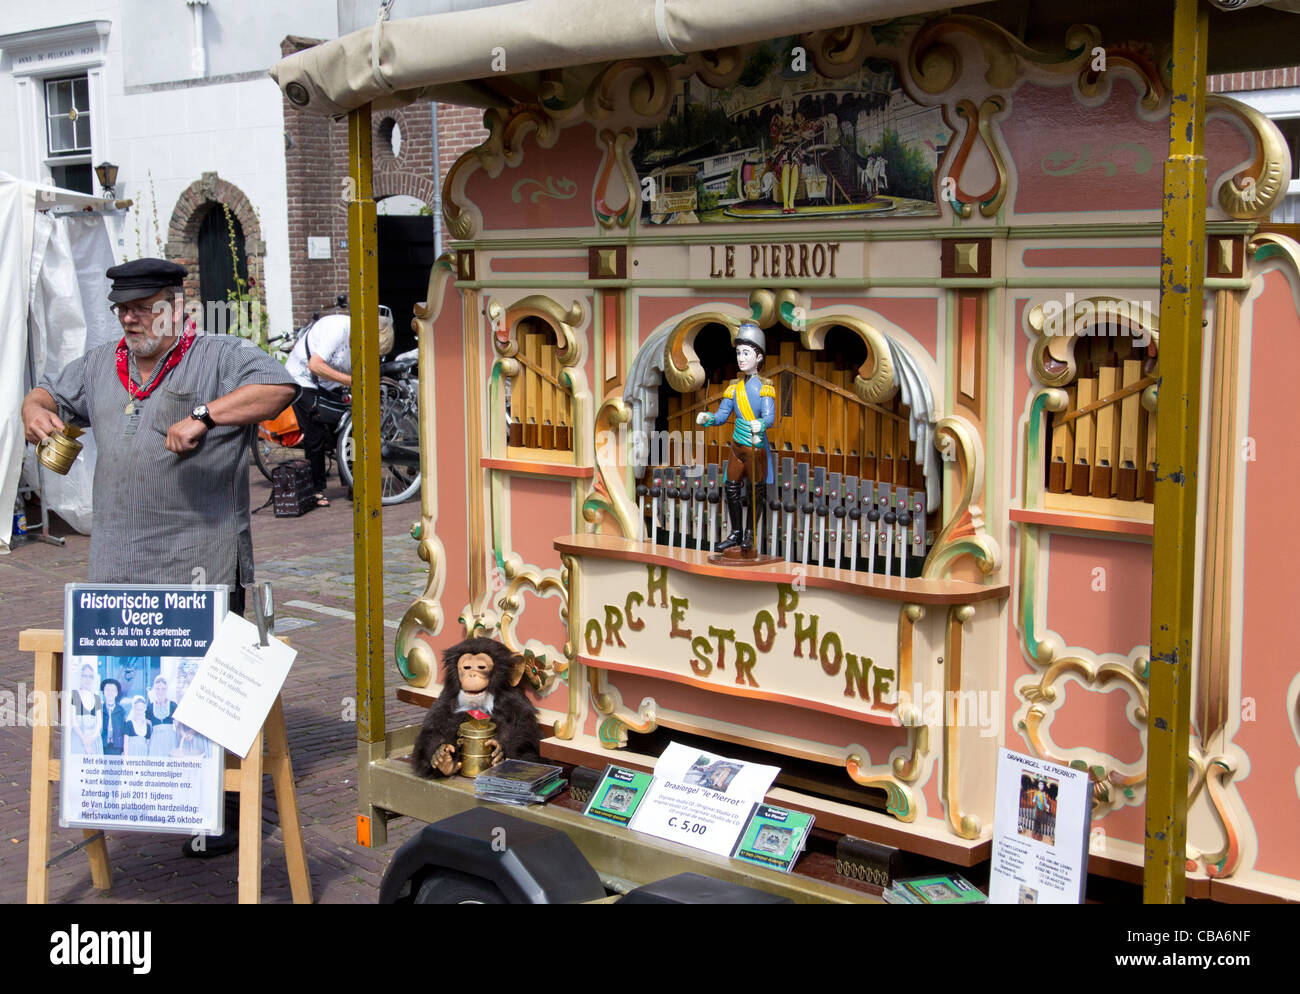 Un orchestrophone ou parc d'orgue à un costume traditionnel marché dans la ville de Veere - Walcheren, Zélande, Pays-Bas Banque D'Images